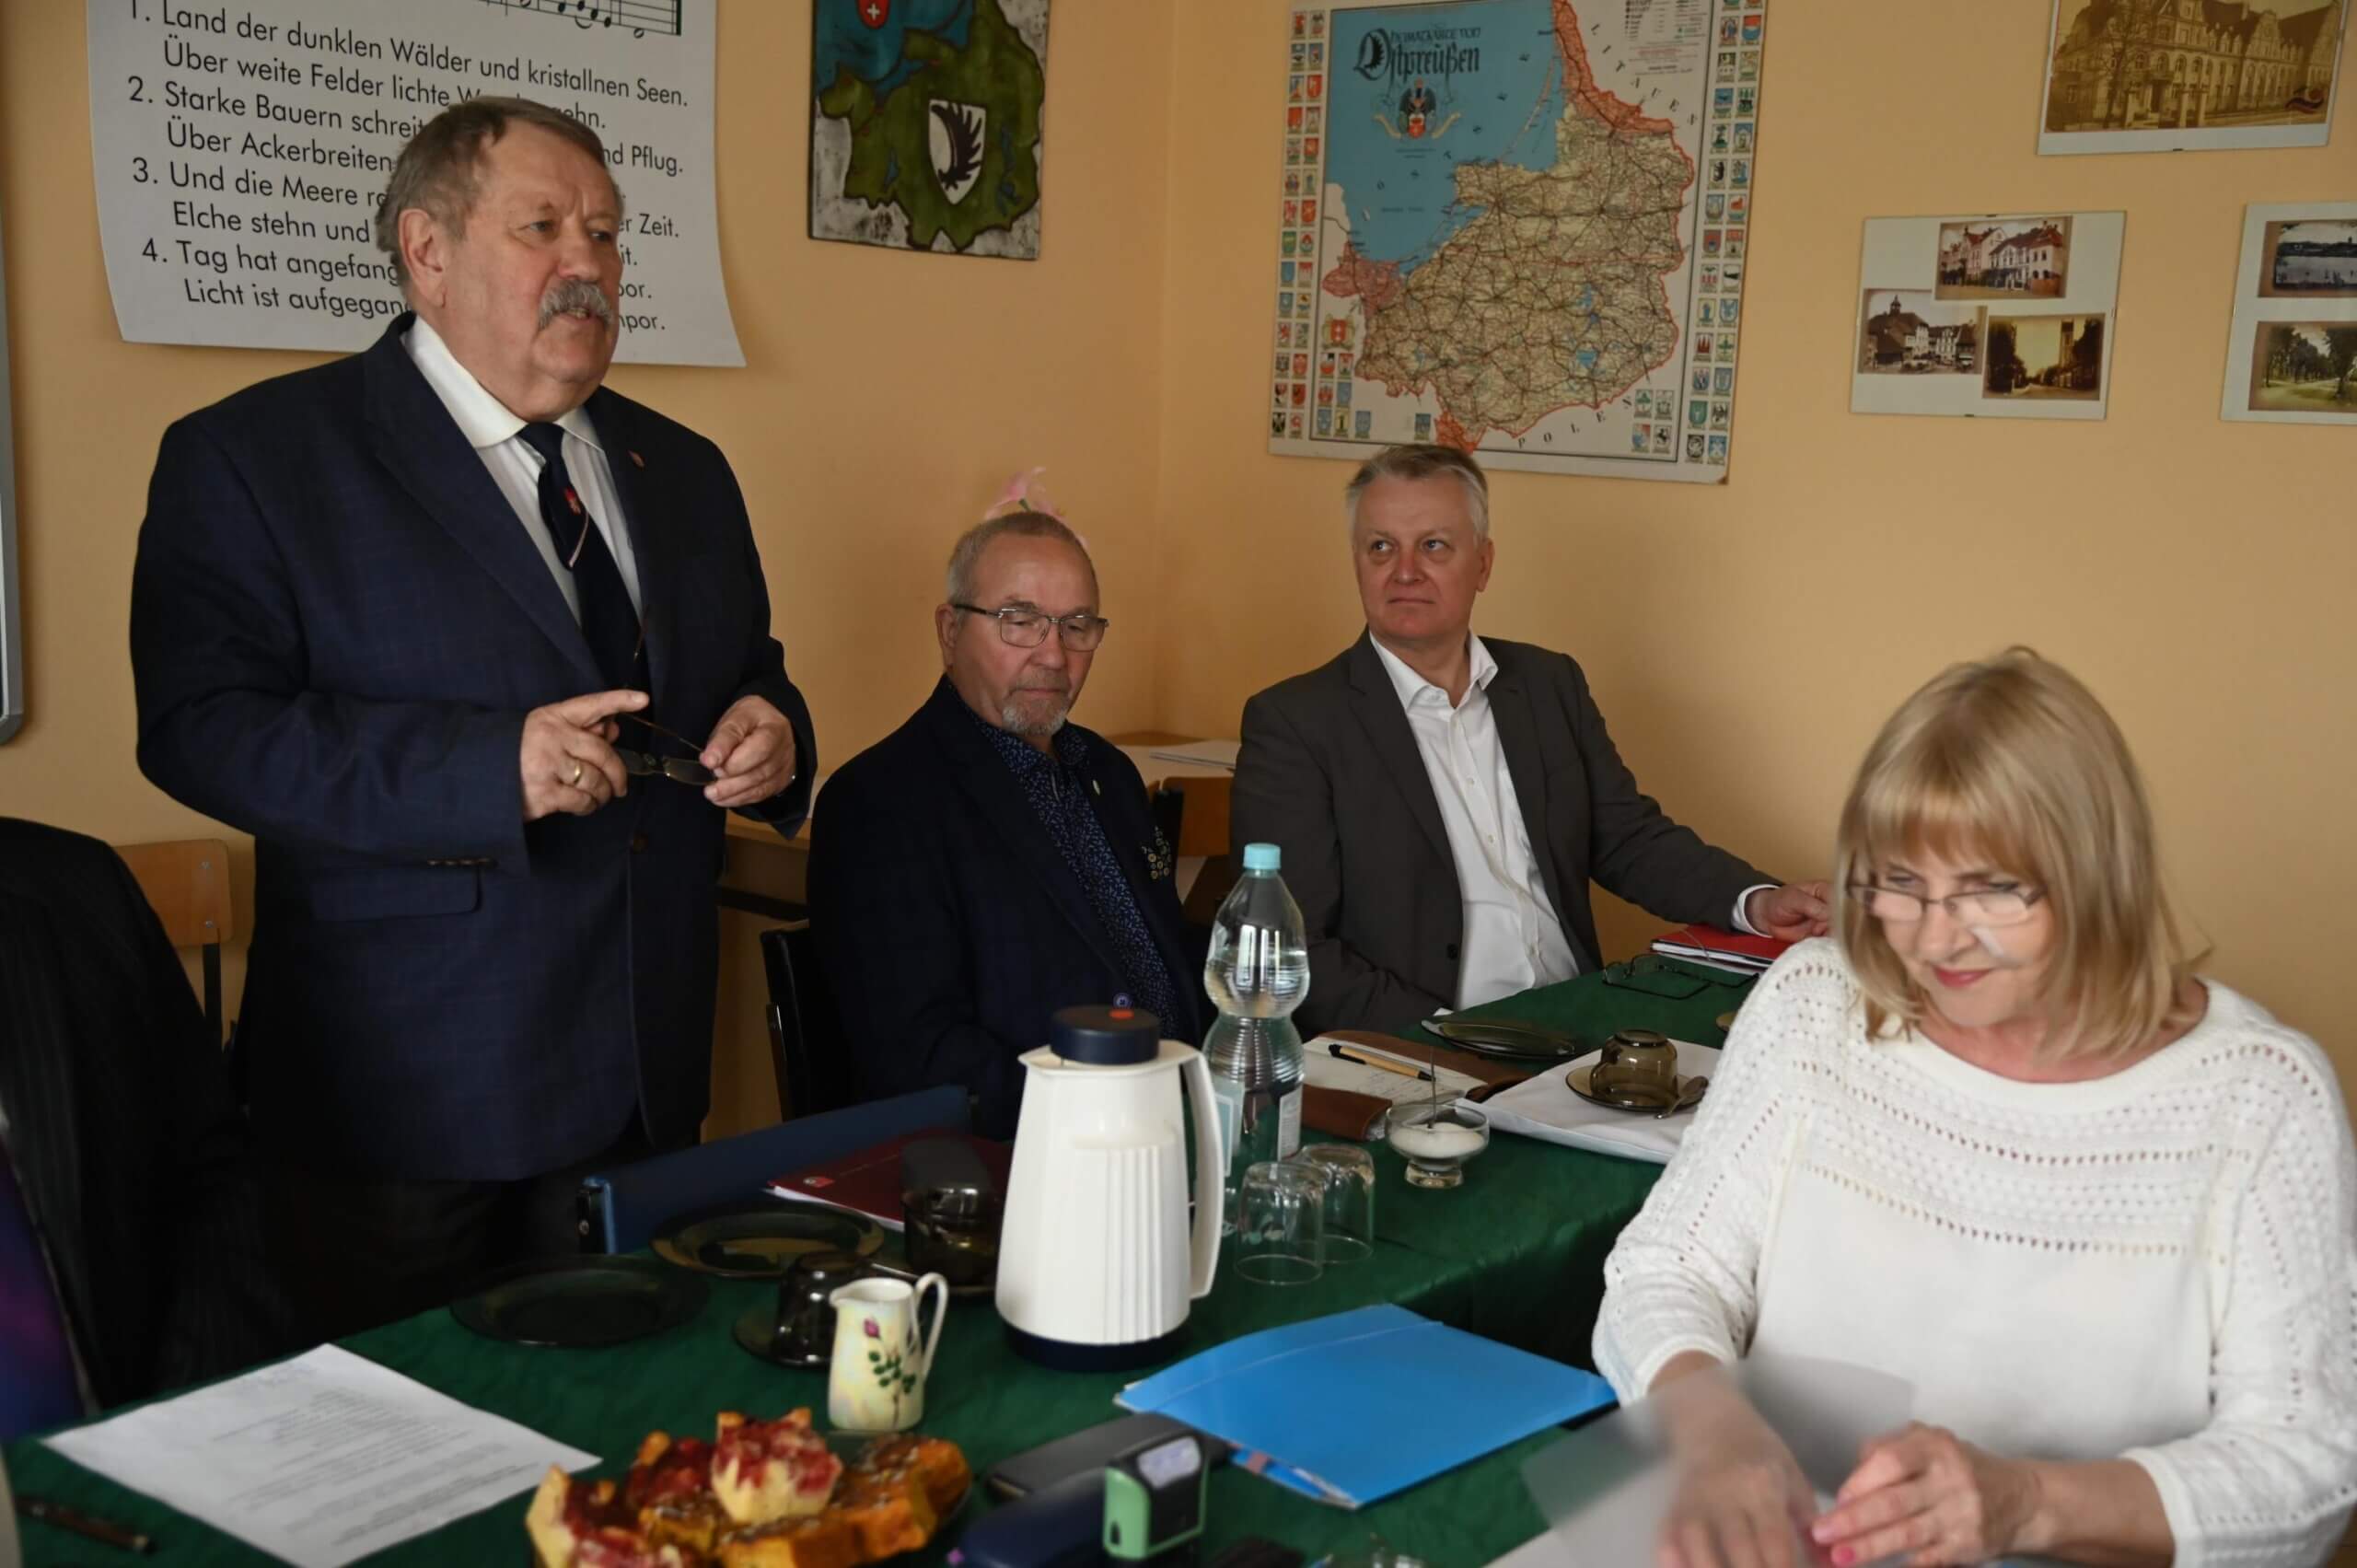 Hauptversammlung der Delegierten des Verbandes der Deutschen Gesellschaften in Ermland und Masuren